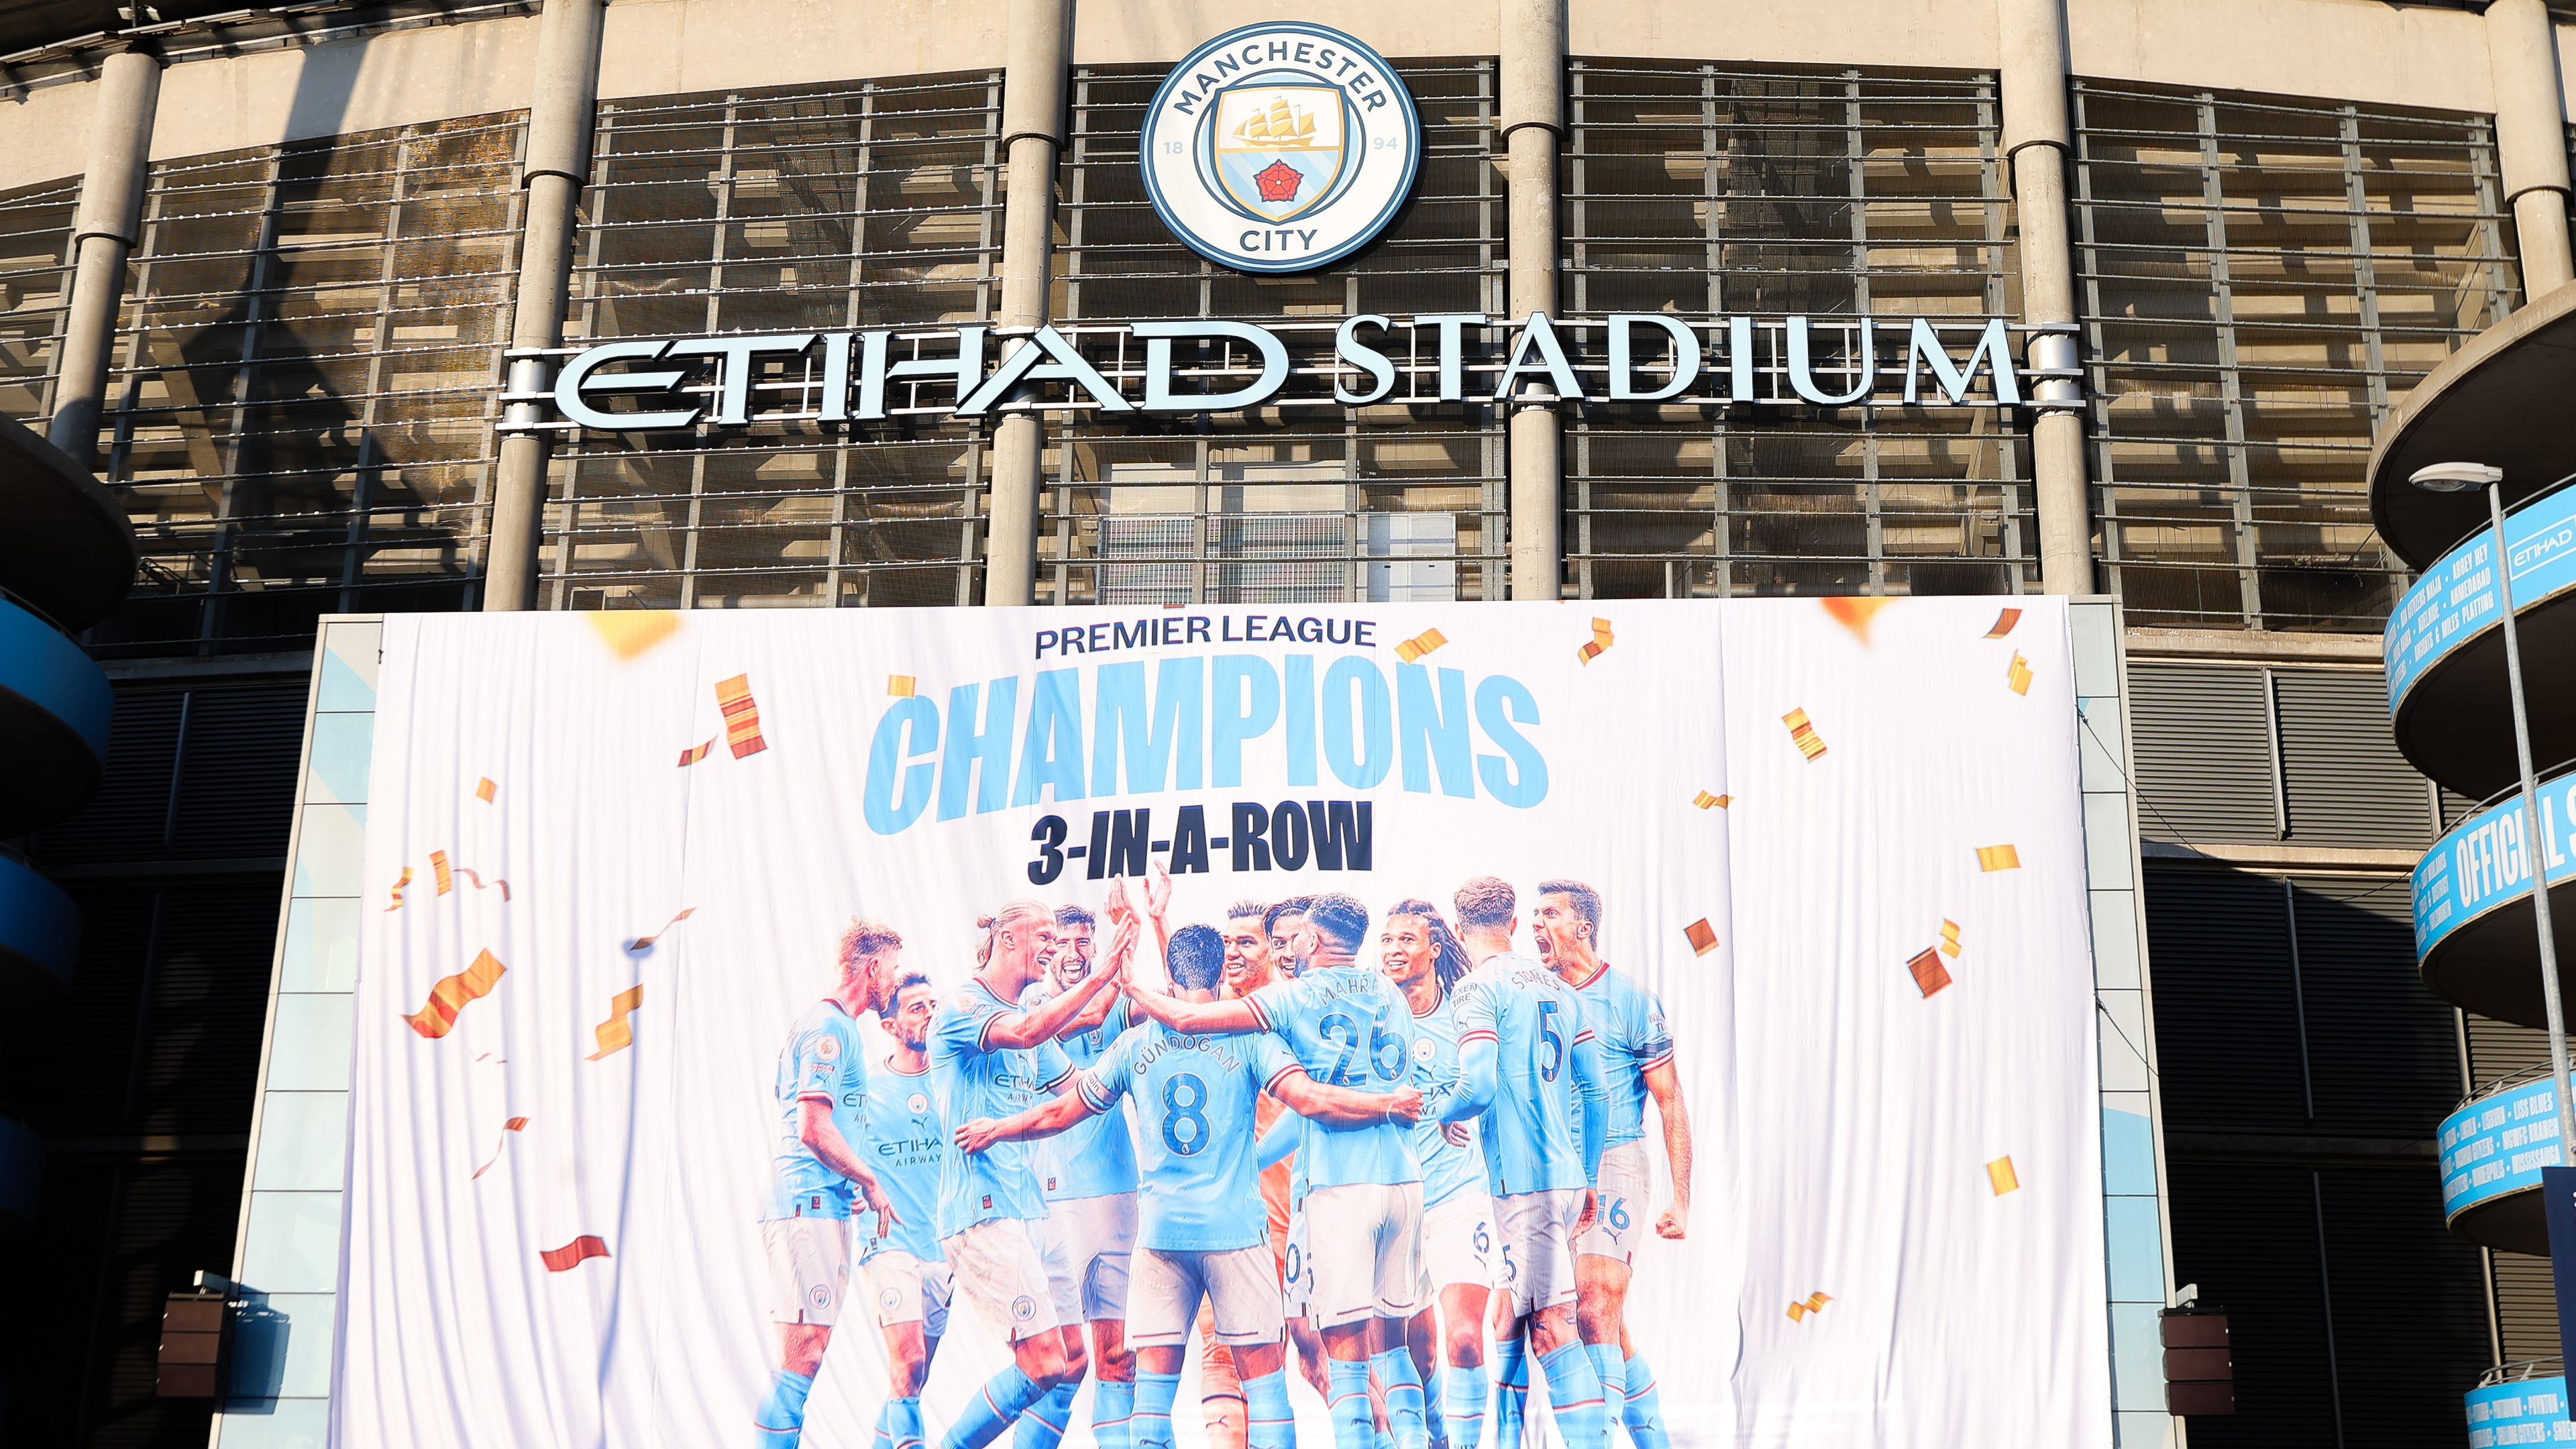 Sorozatban harmadik alkalommal lett a Manchester City a Premier League bajnoka (Fotó: Getty Images)